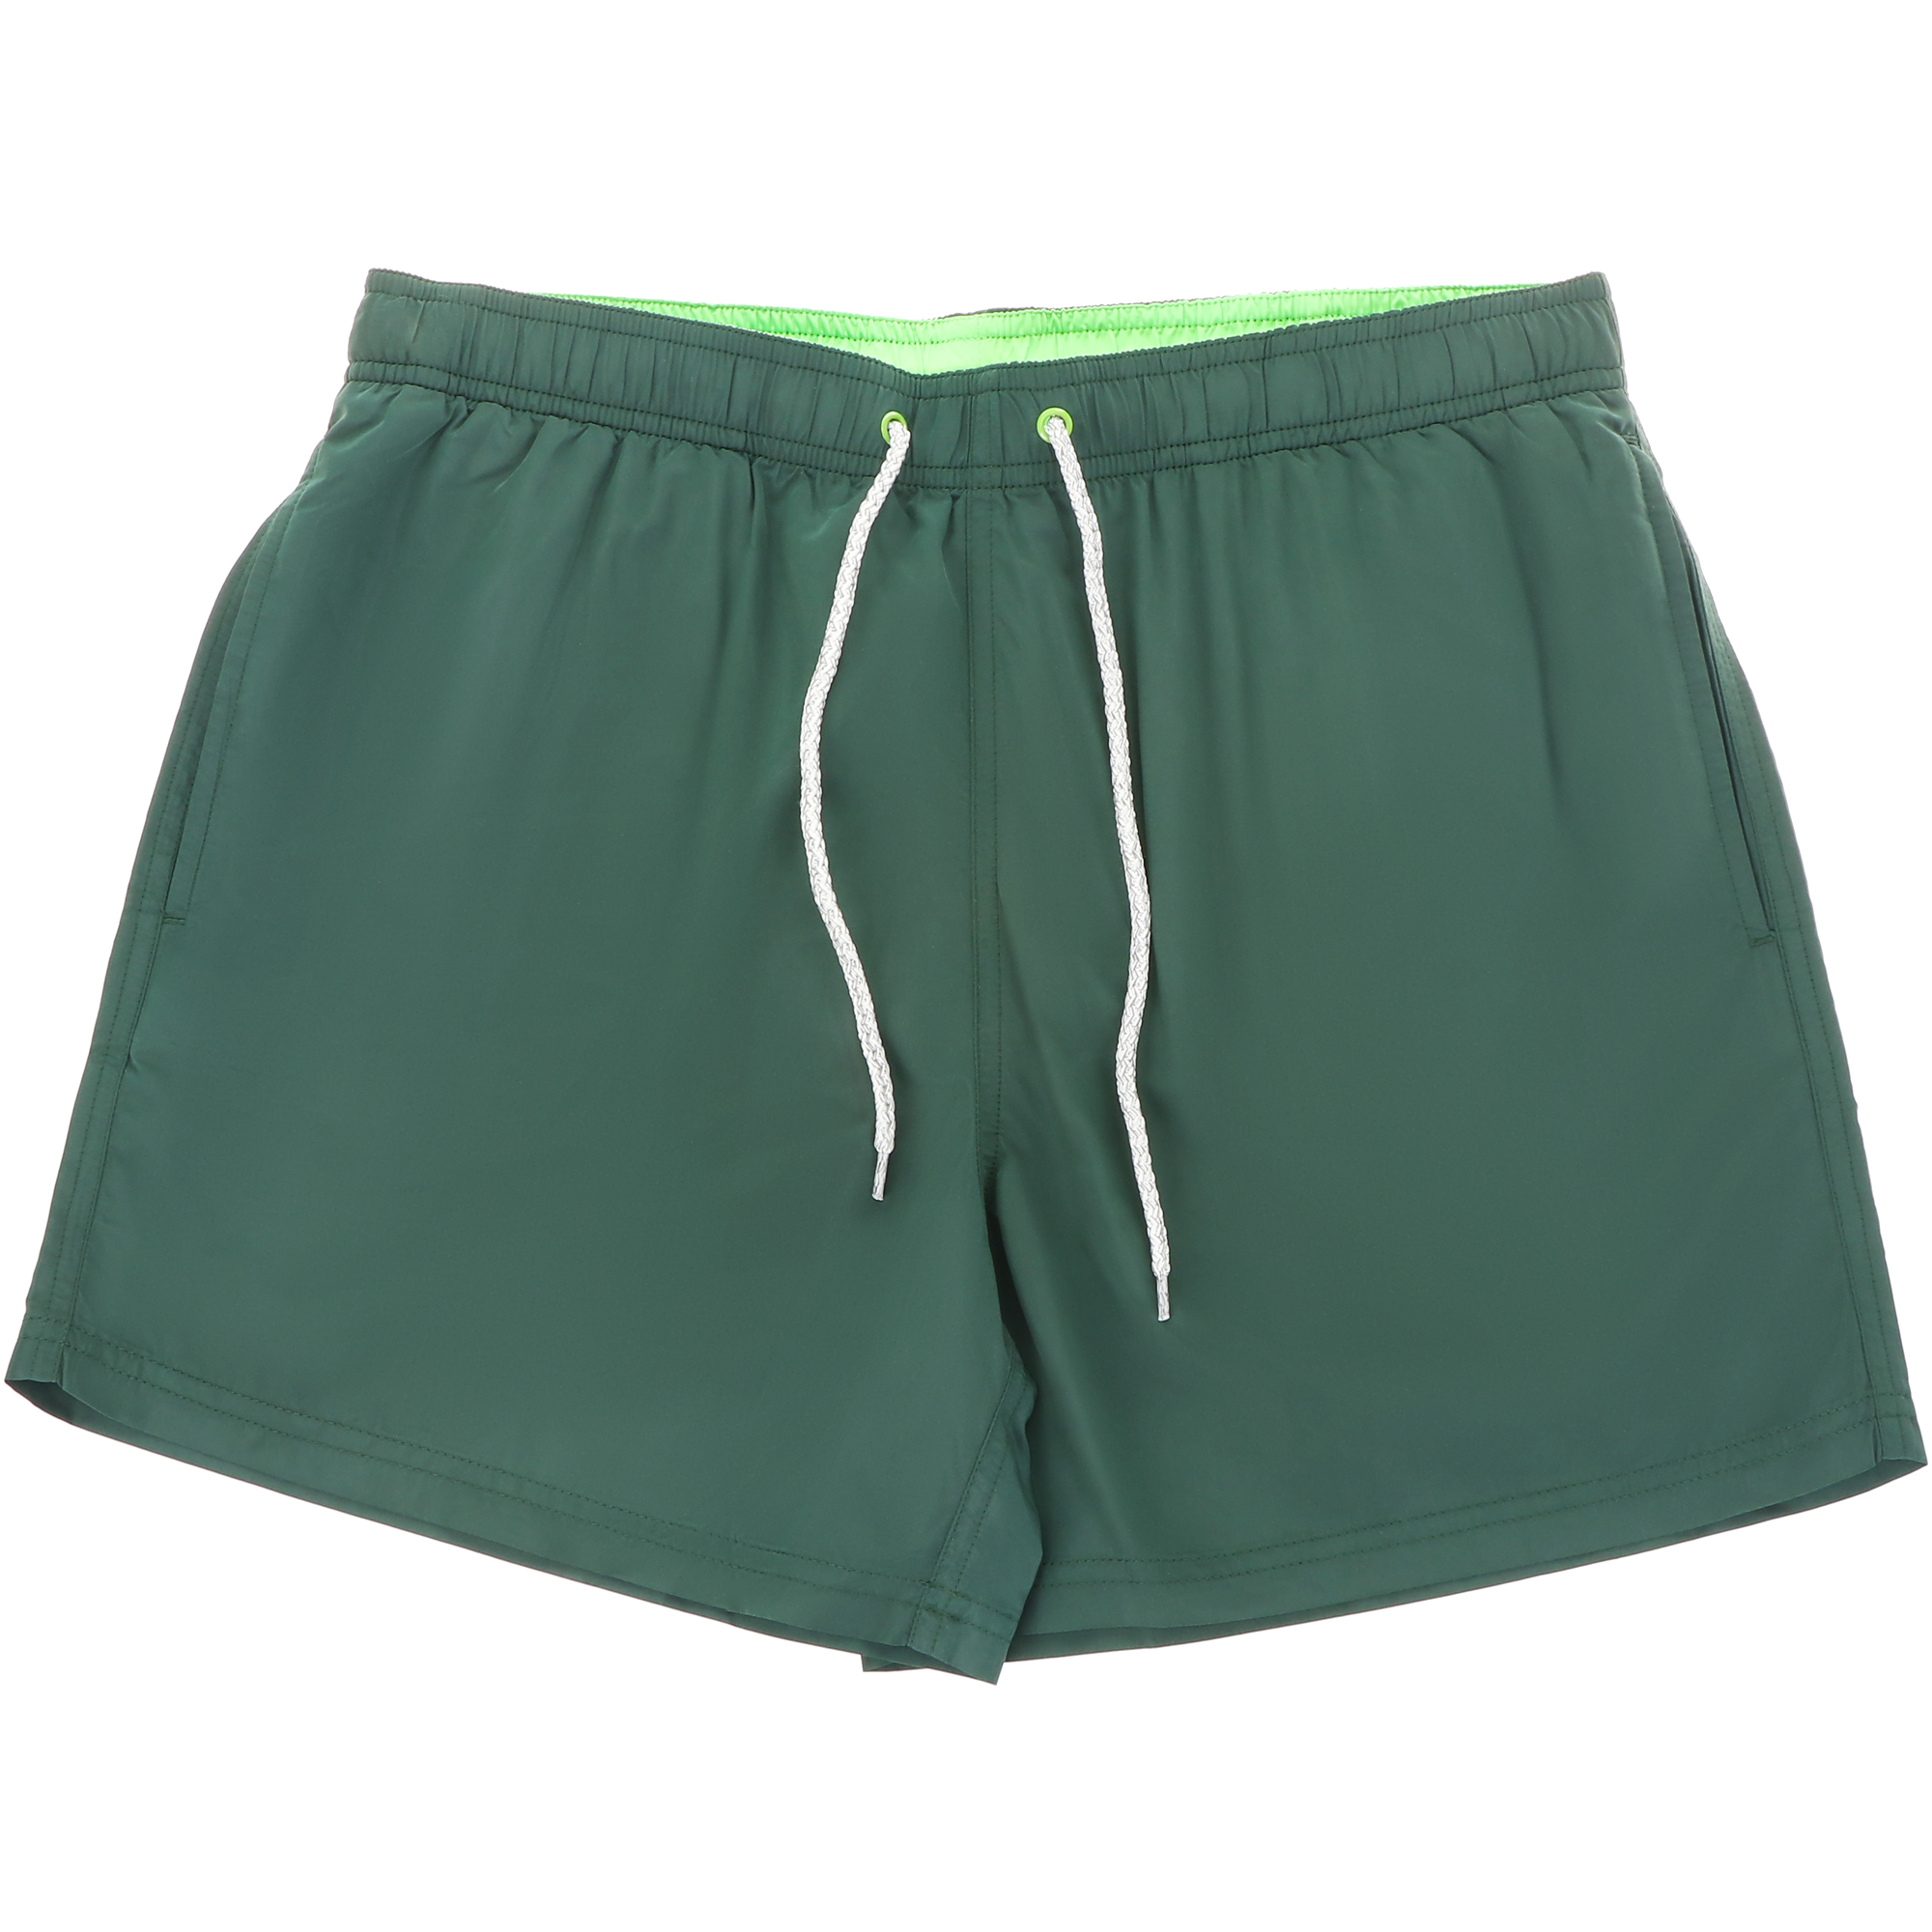 Мужские пляжные шорты Joyord зелёные, цвет зелёный, размер M - фото 1